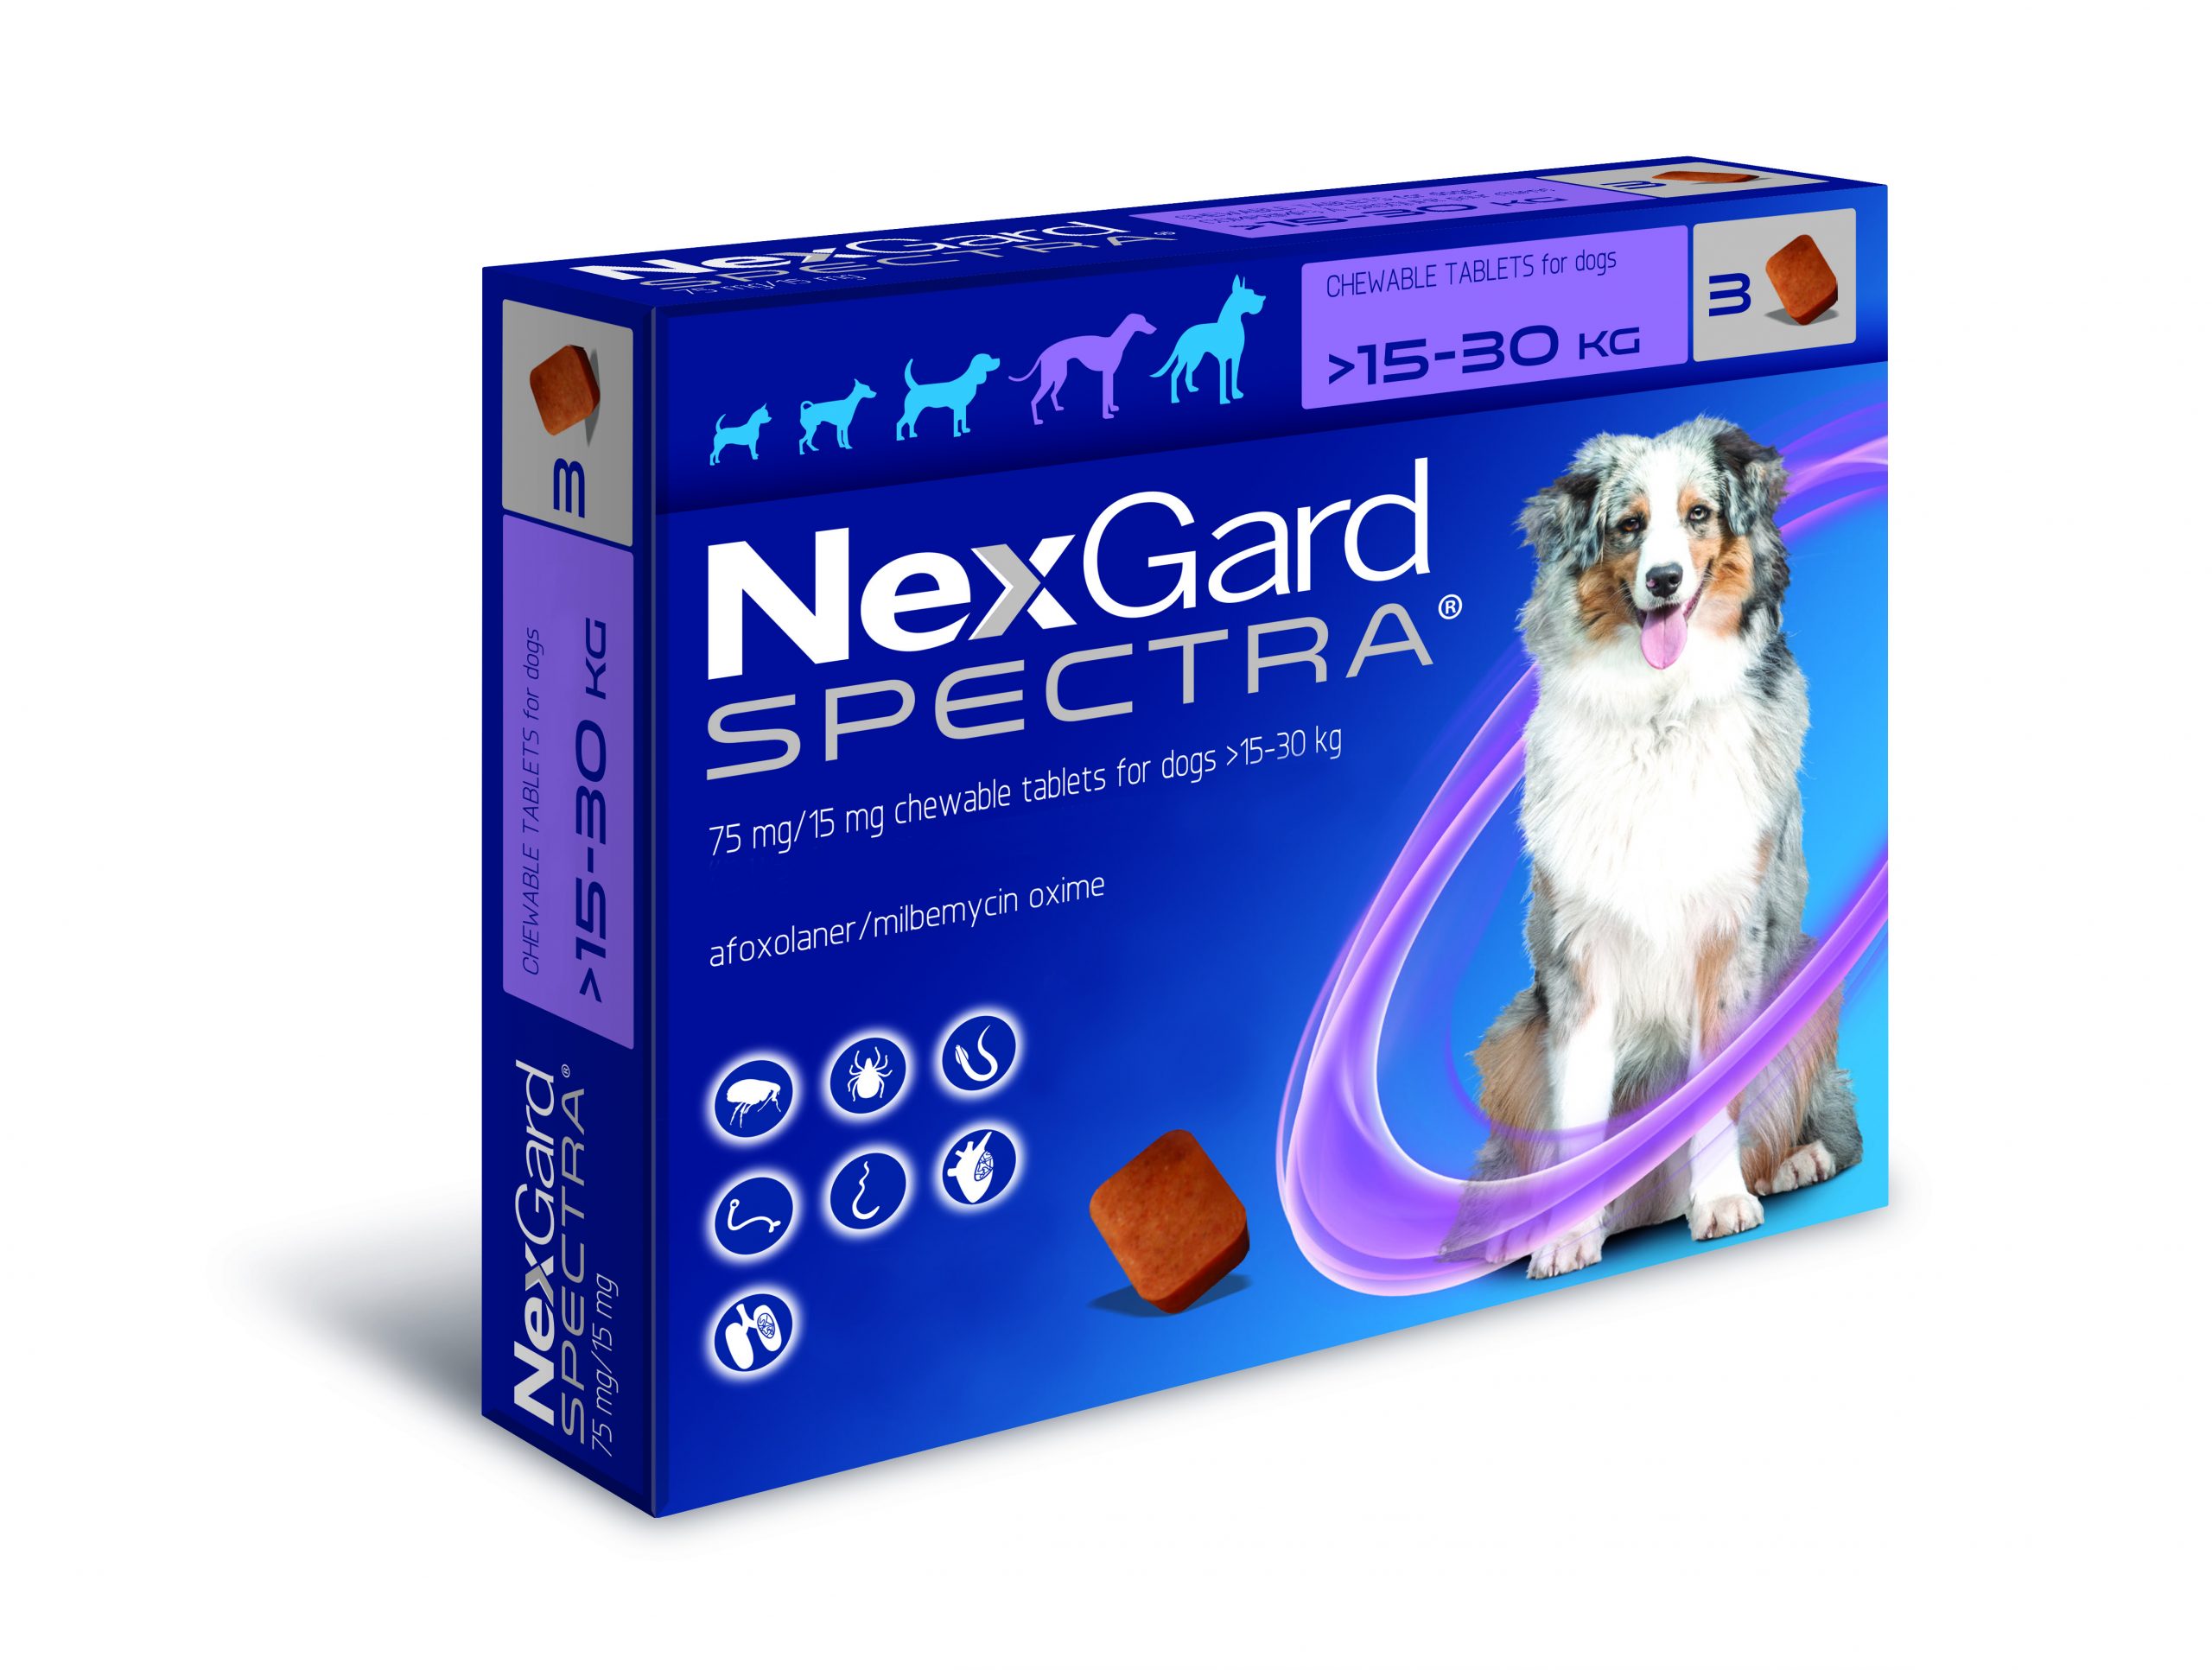 Нексгард спектра отзывы. НЕКСГАРД спектра. NEXGARD Spectra для собак 3 компонентная 1 большая и 2 маленькие. НЕКСГАРД для кошек. NEXGARD Spectra funciona Италия.